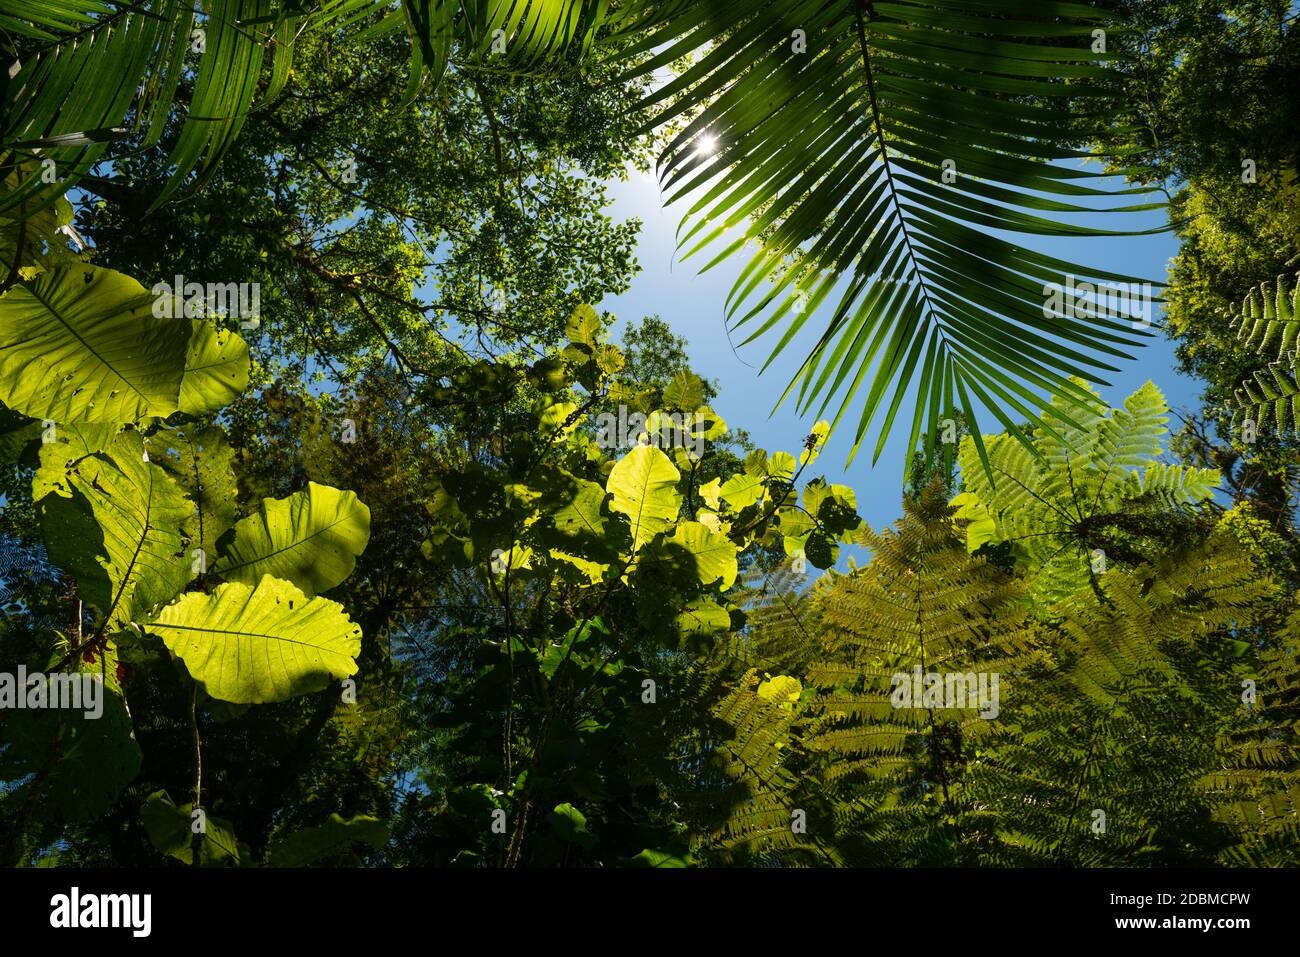 Forêt tropicale de l'Atlantique végétation luxuriante vue de l'intérieur de la forêt Banque D'Images